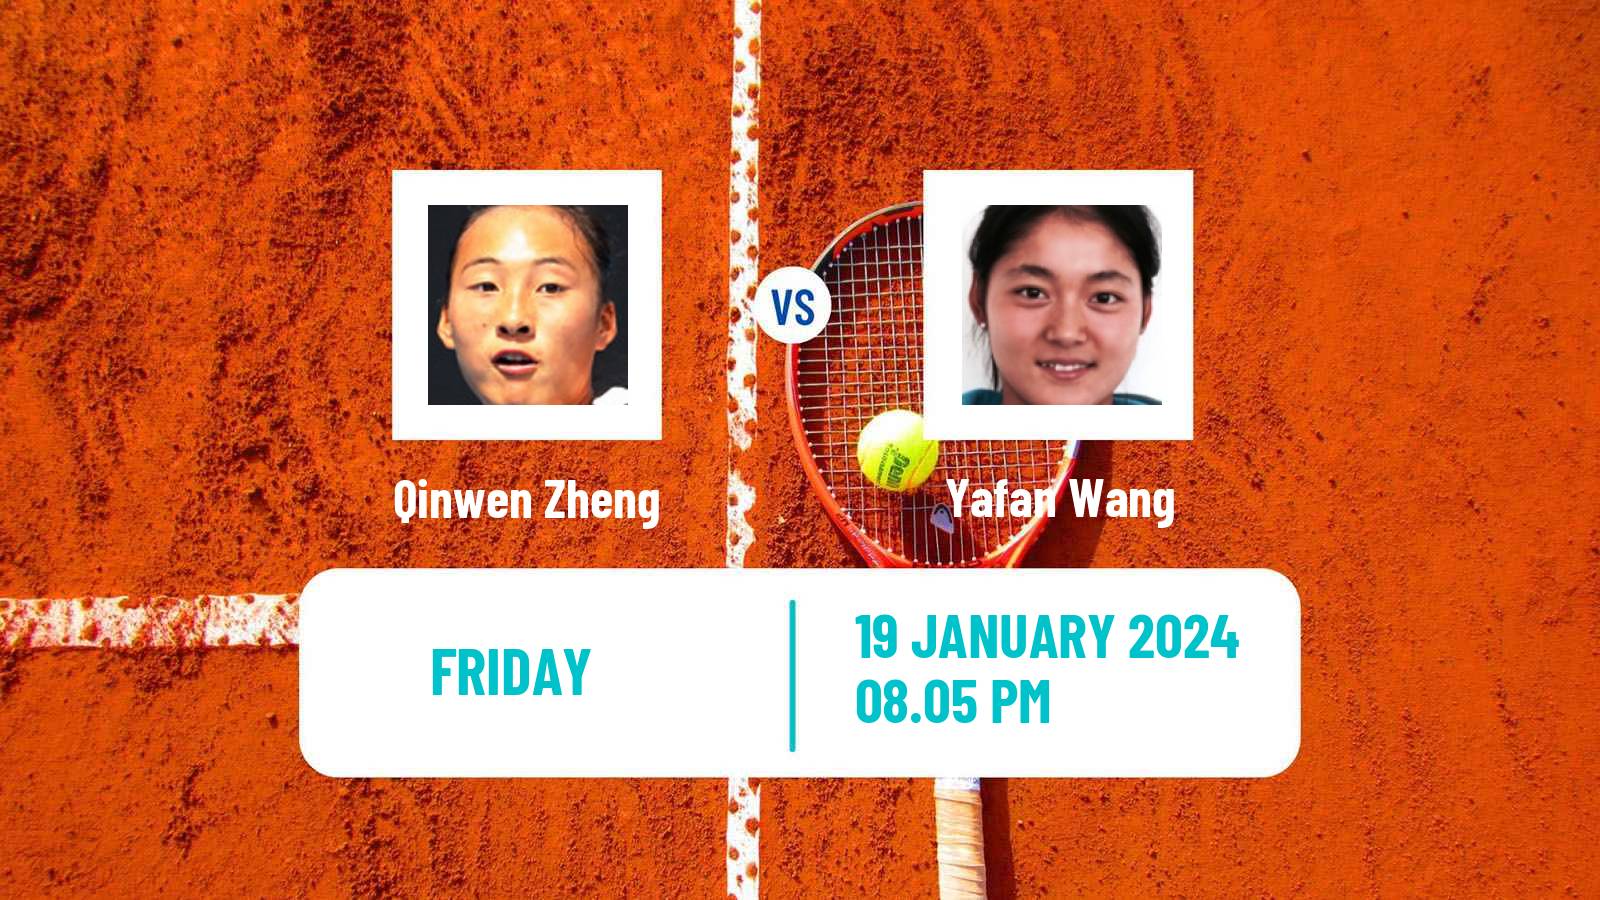 Tennis WTA Australian Open Qinwen Zheng - Yafan Wang